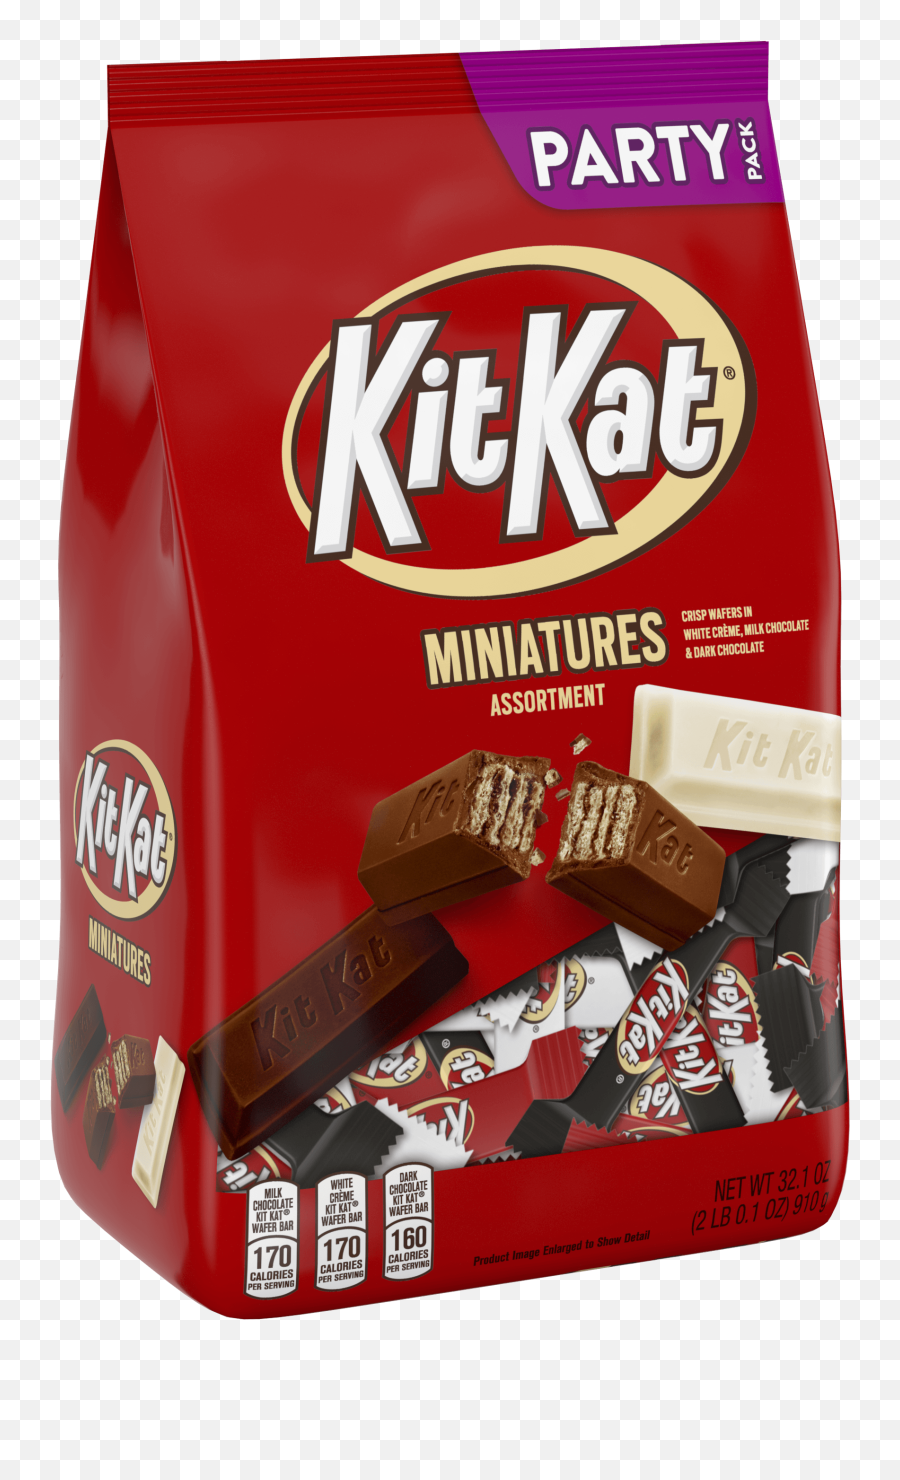 Kit Kat Miniatures Assortment Candy Party Bag 321 Oz - Kit Kat Miniatures Assortment Png,Kitkat Png